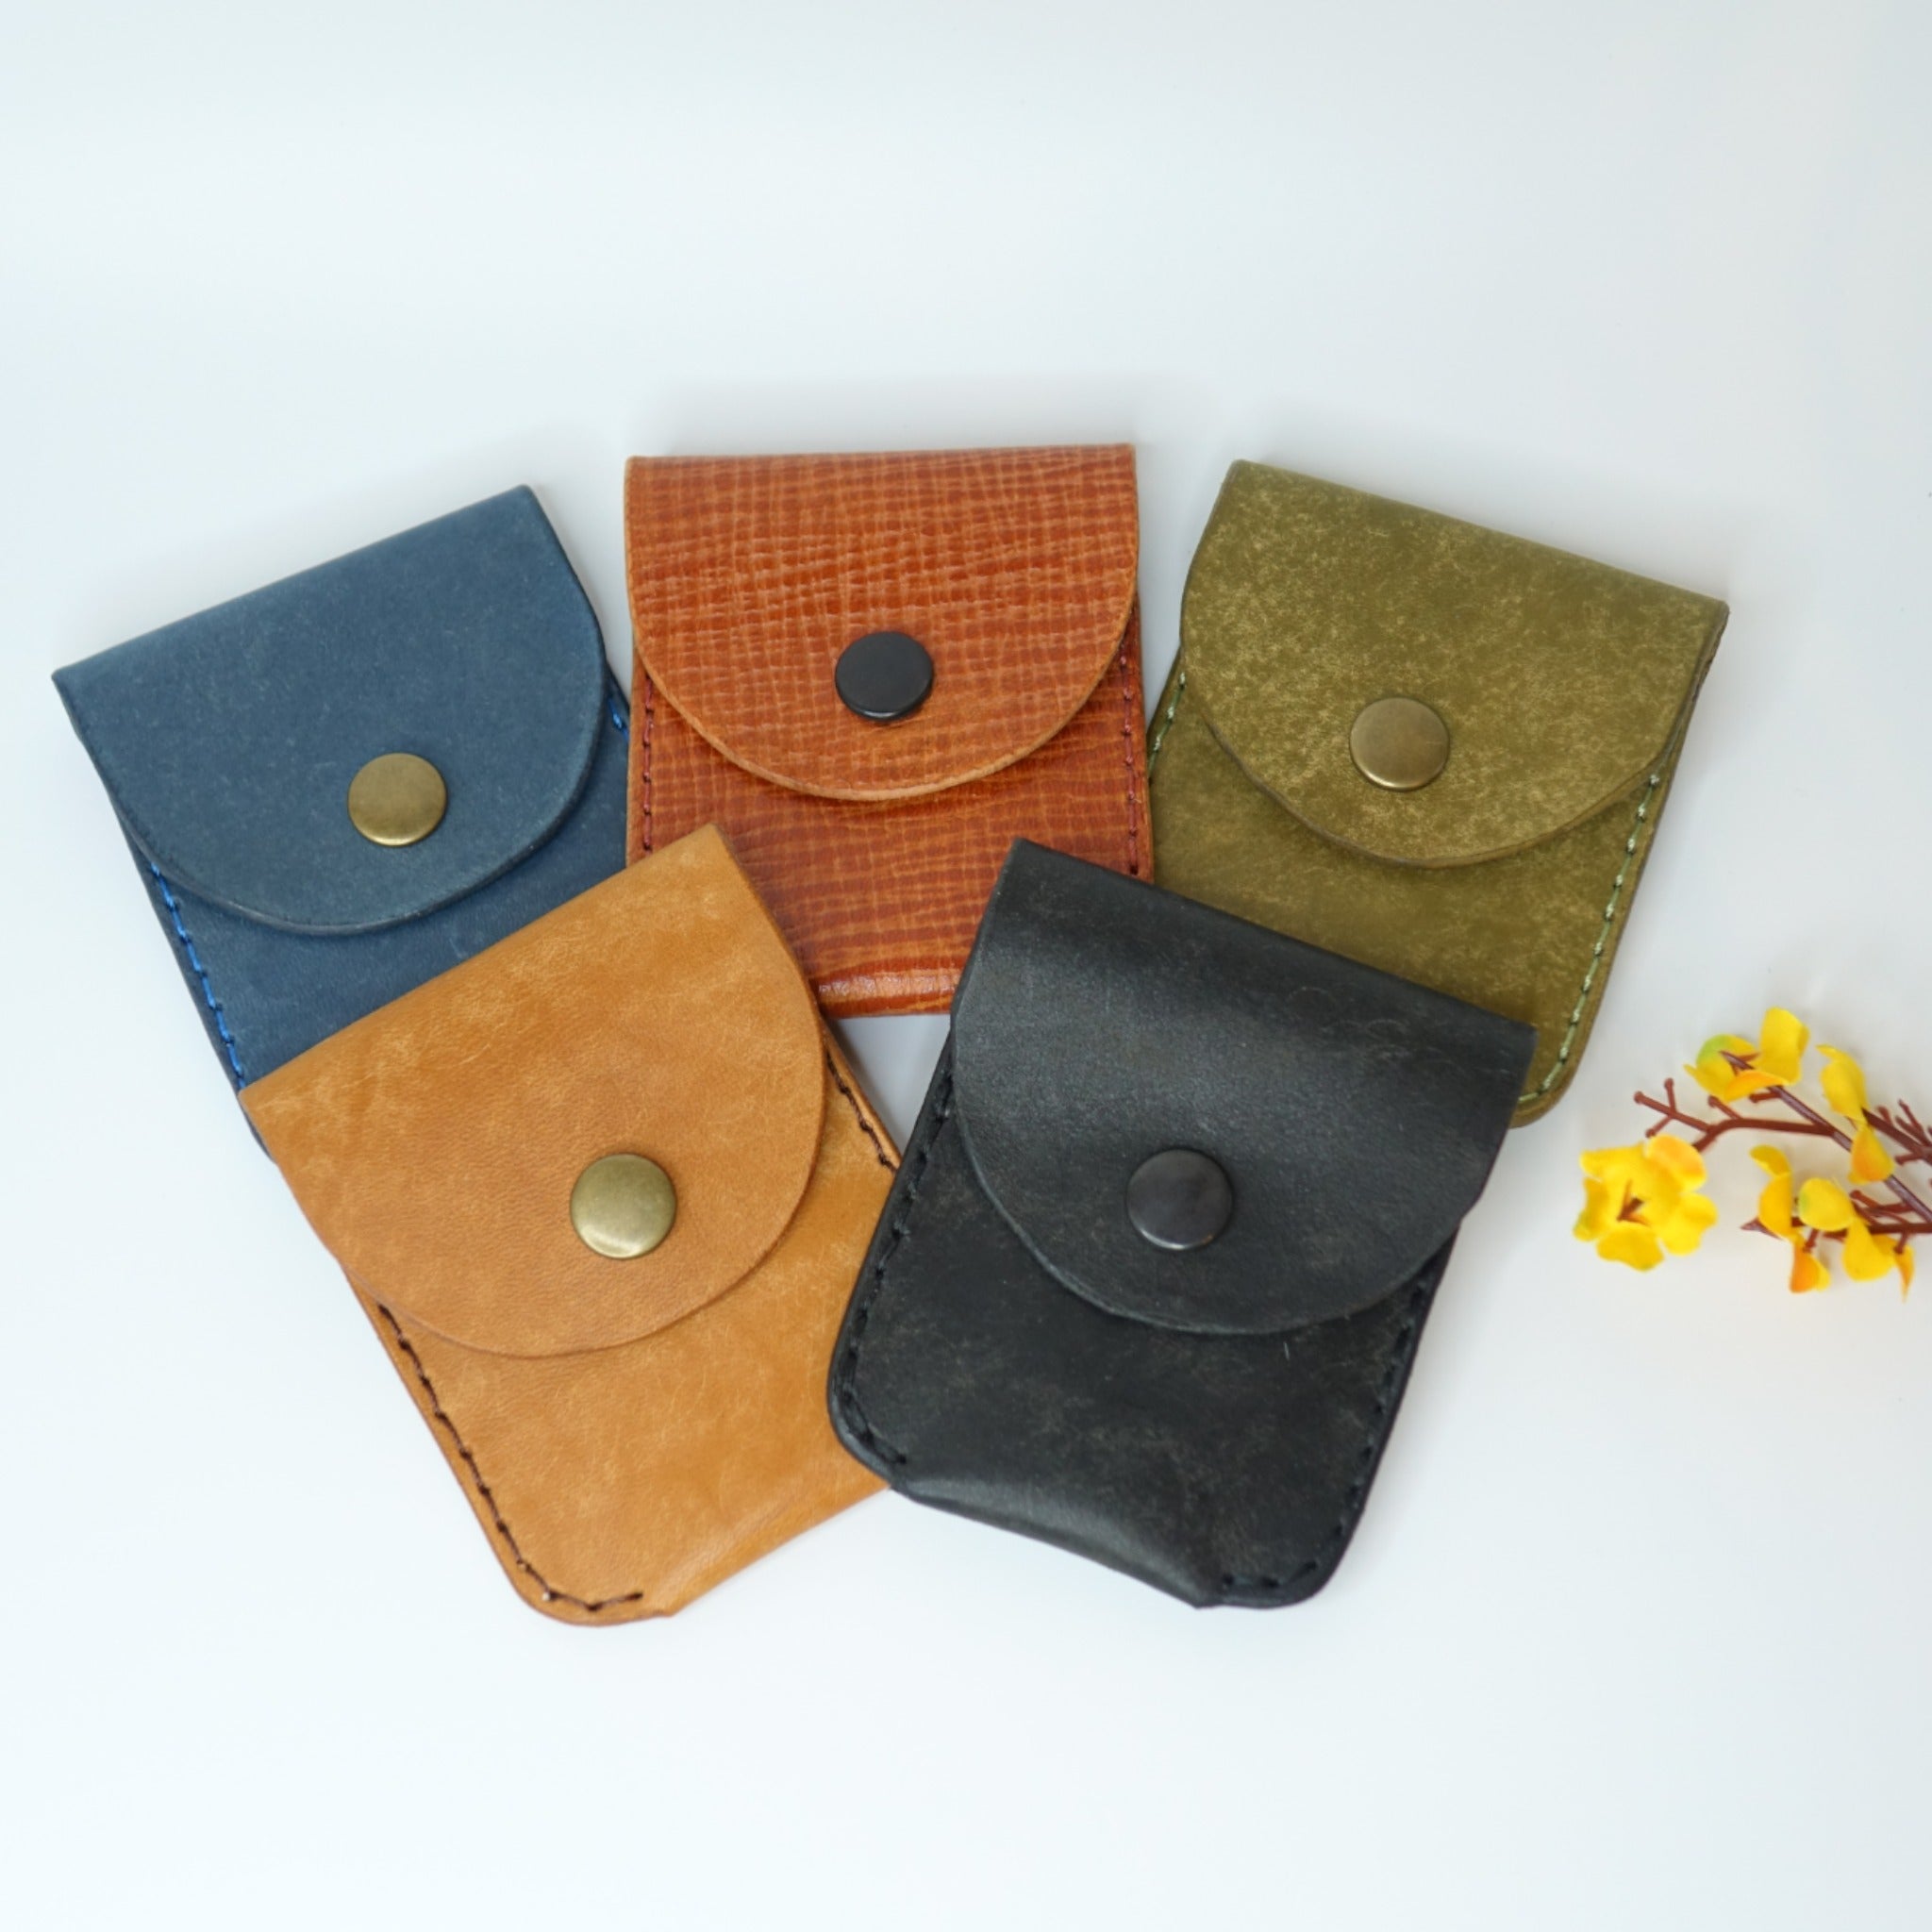 Elena Handbags Mini Square Leather Woven Purse